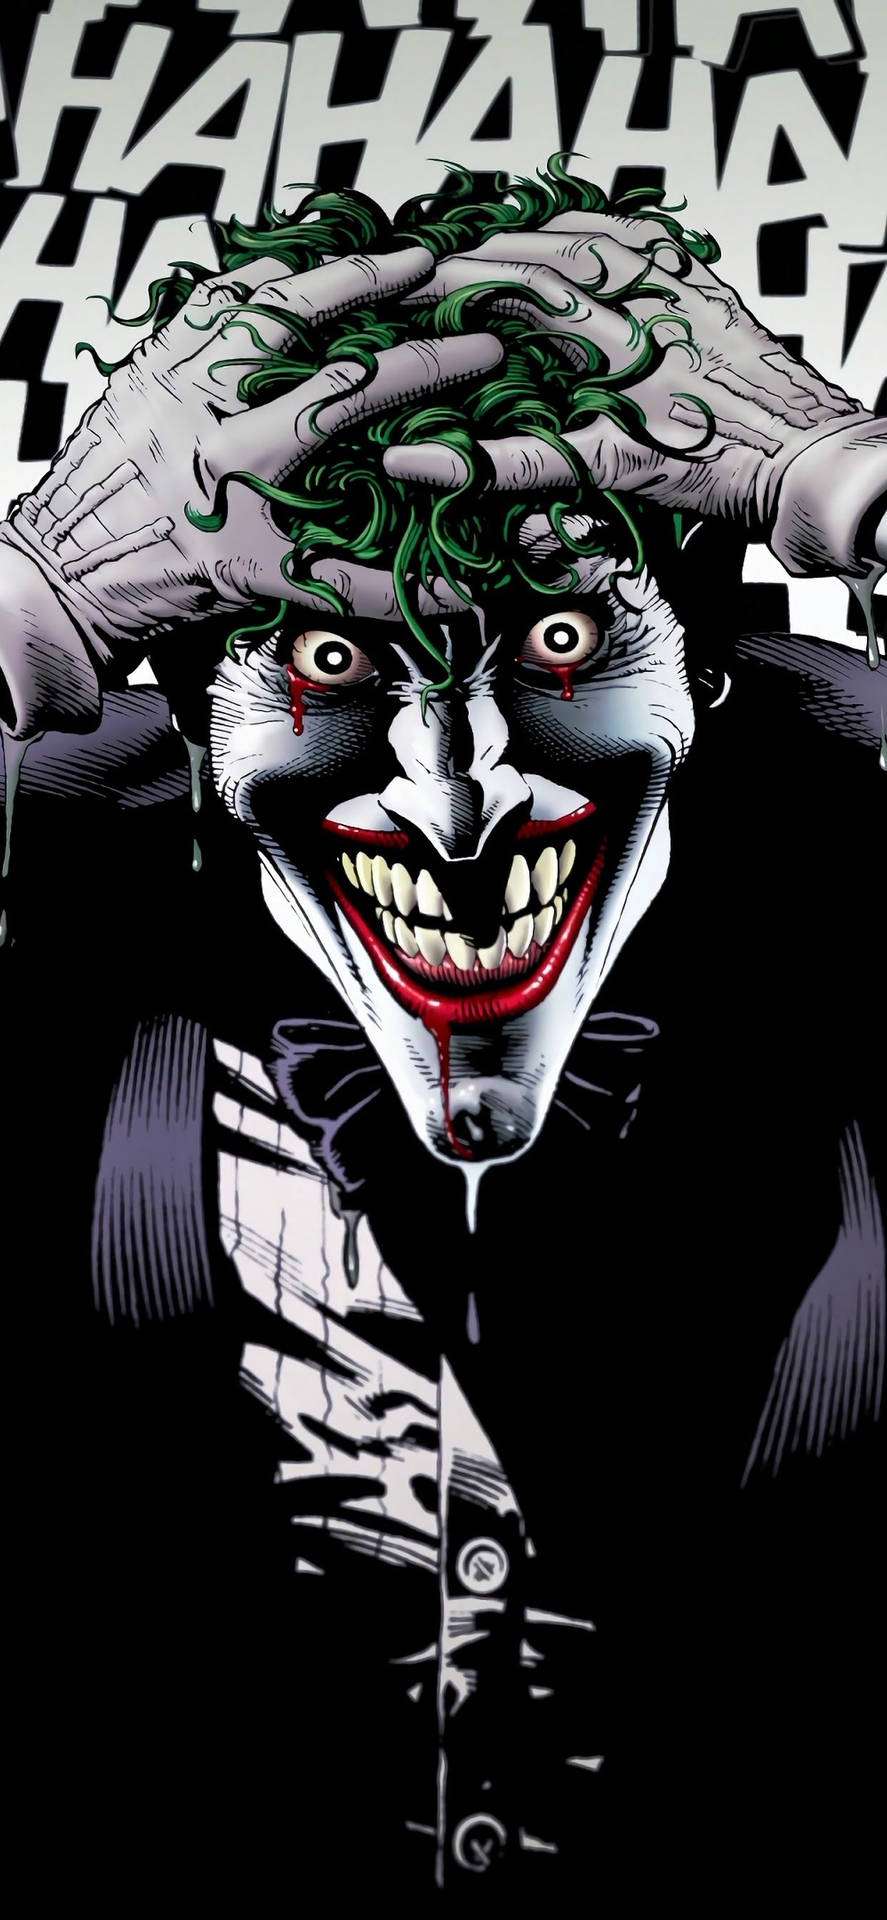 Download Joker iPhone Scary Look Green